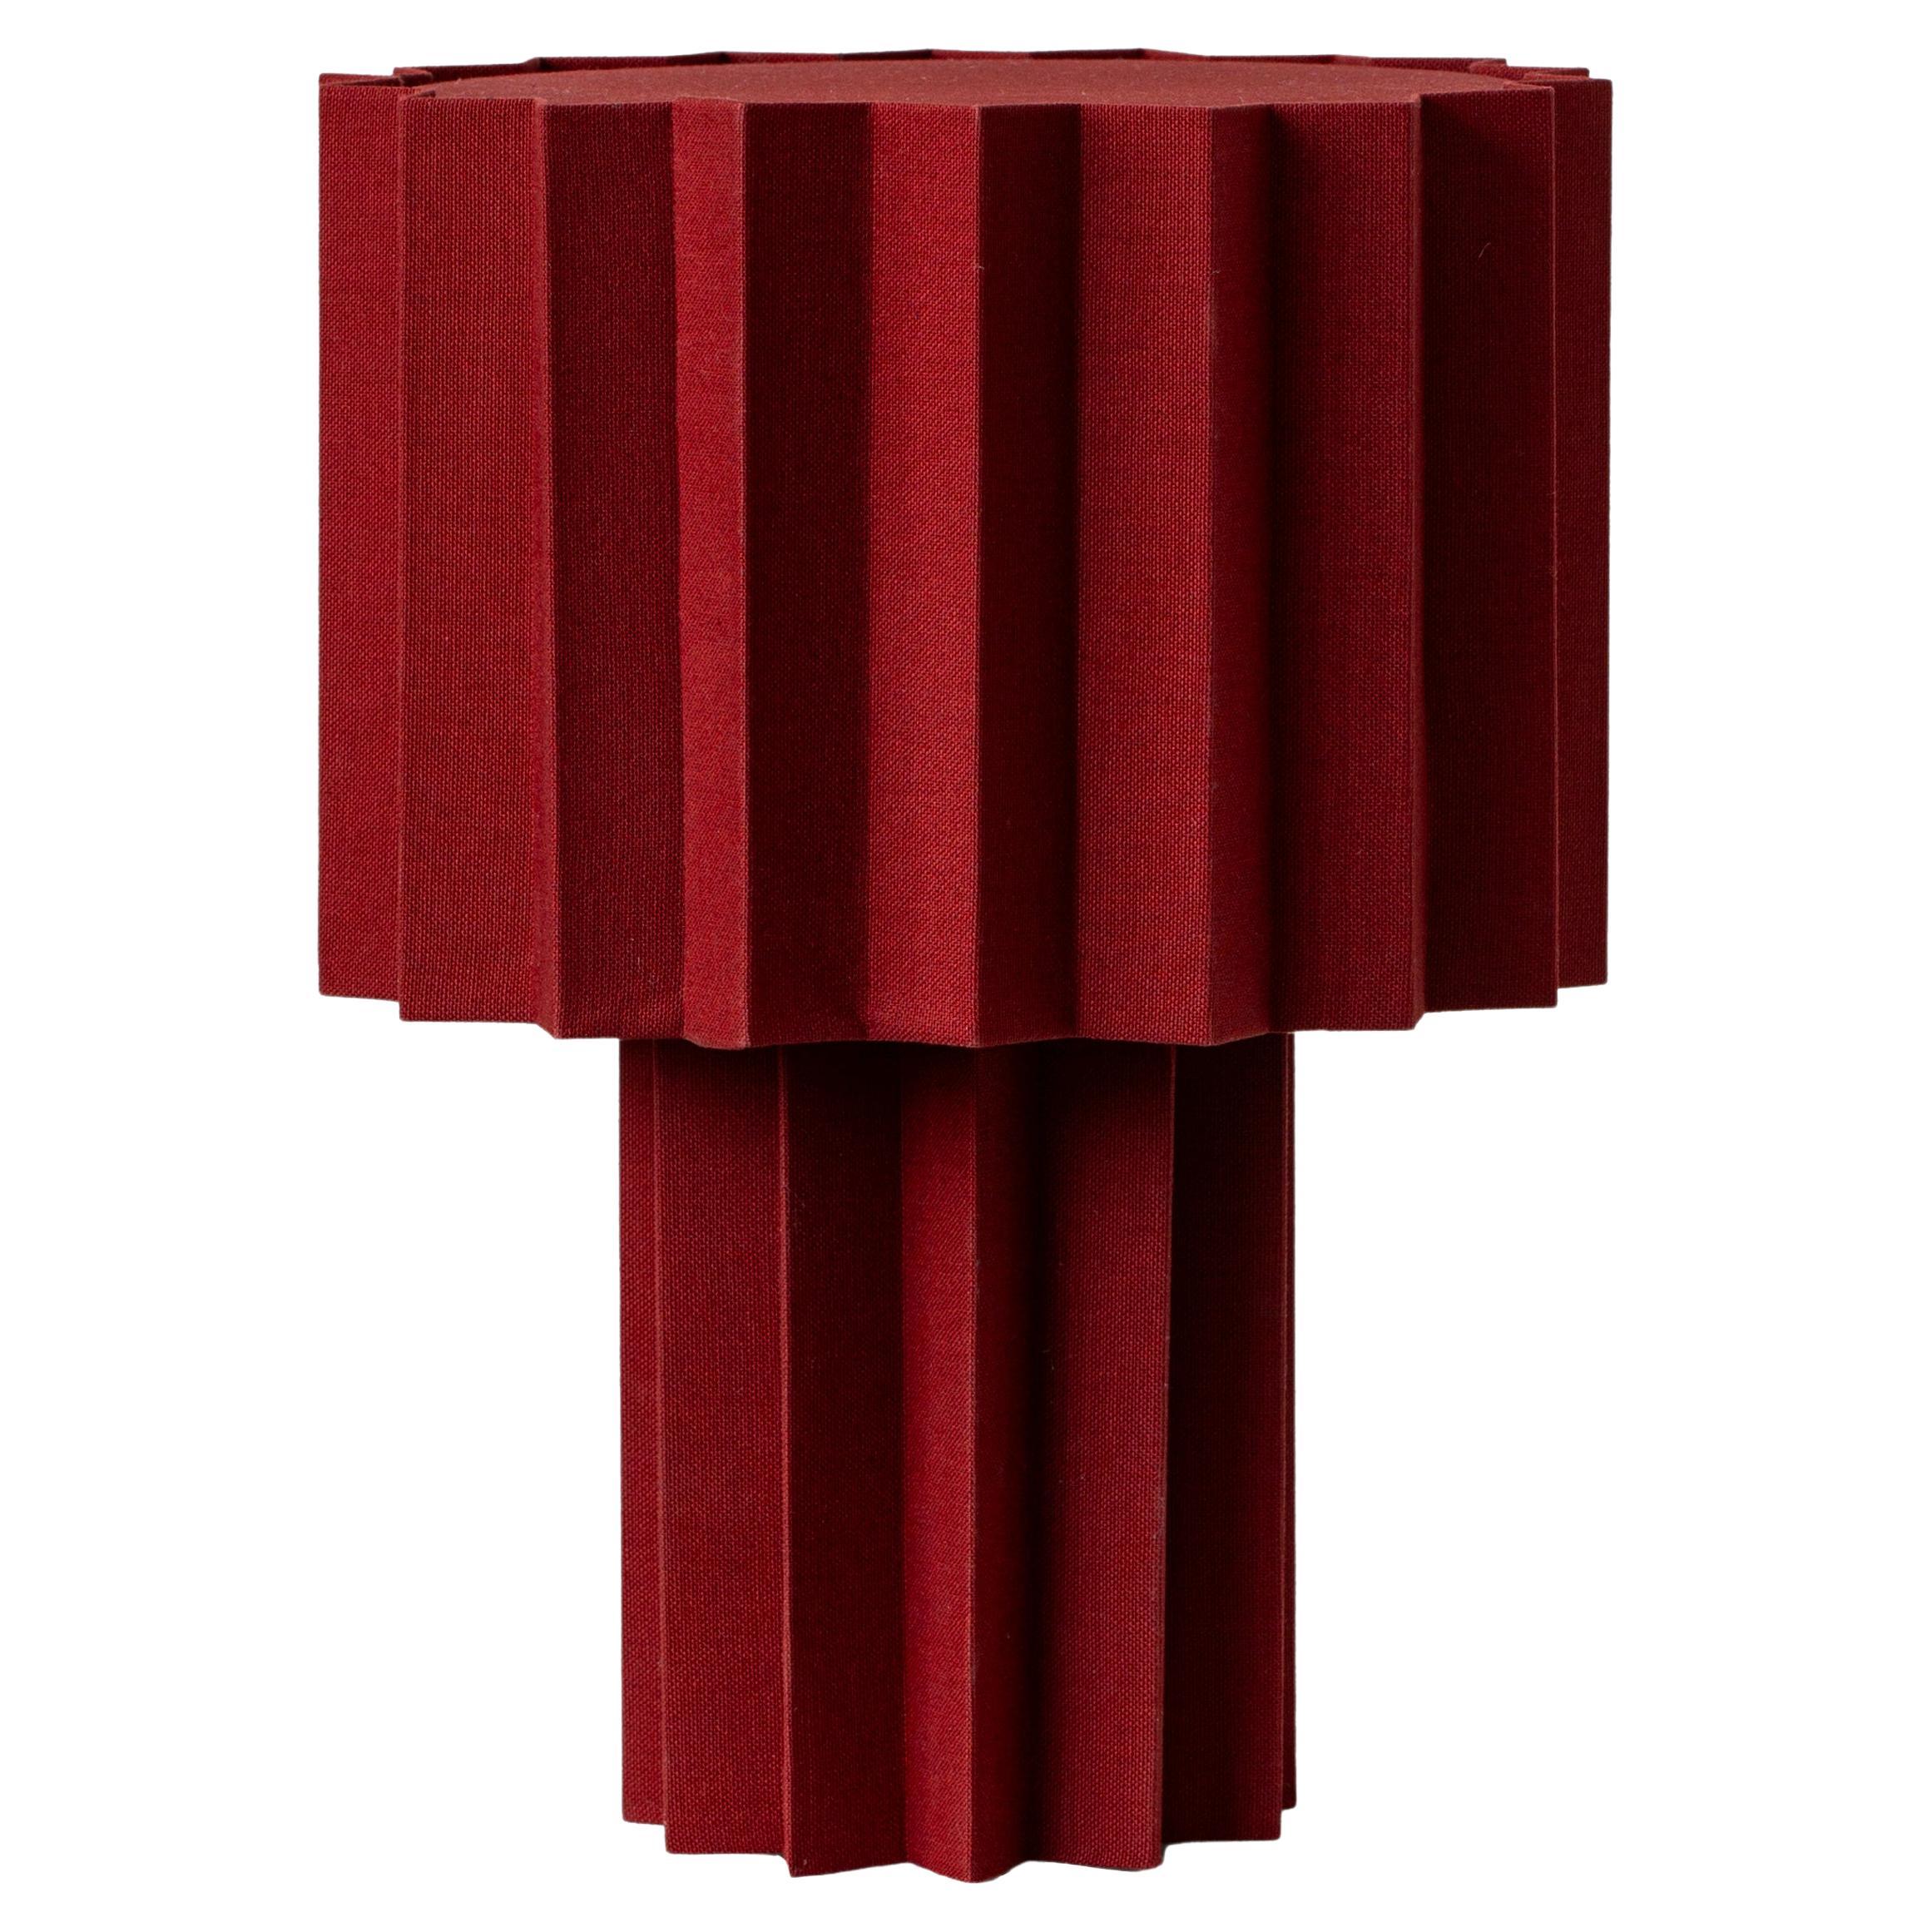 'Plissé Burgundy Edition' Pleated Textile Table Lamp by Folkform for Örsjö For Sale